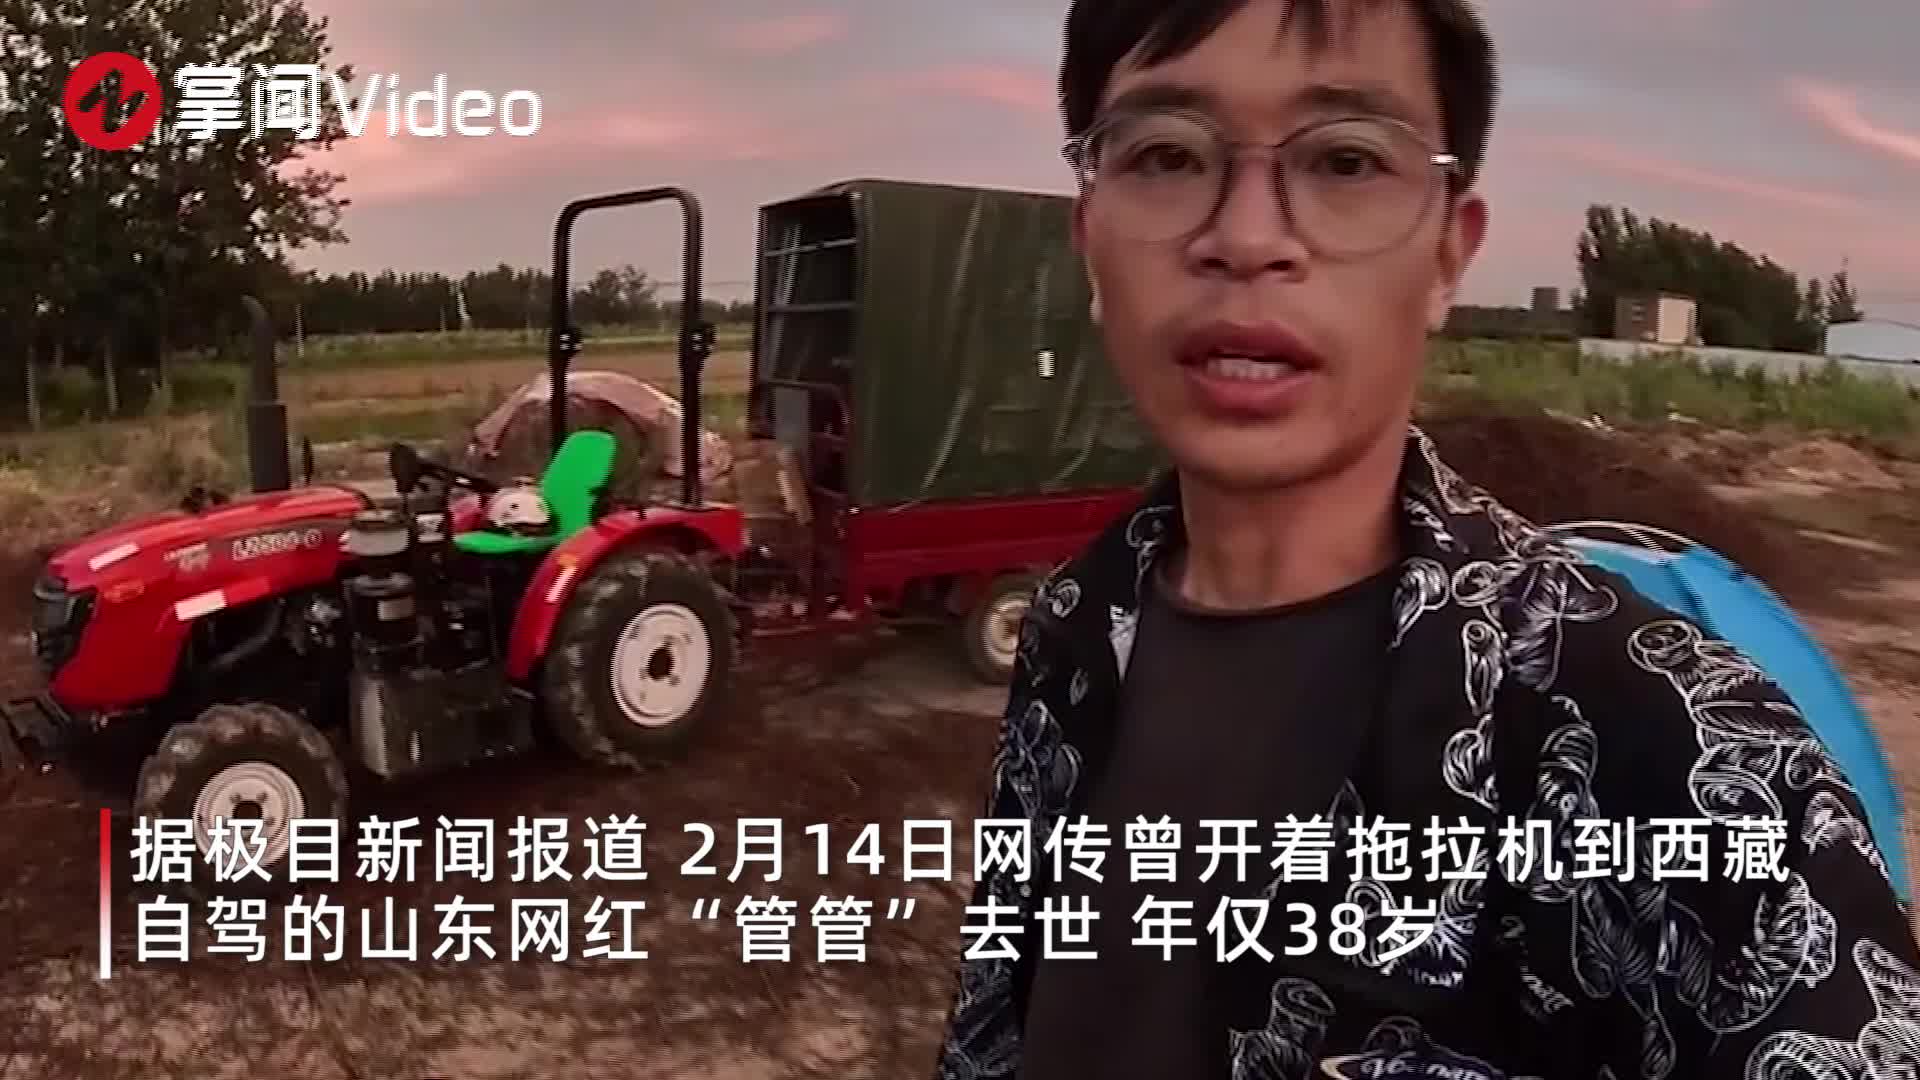 2020中国短视频行业洞察报告- MobTech